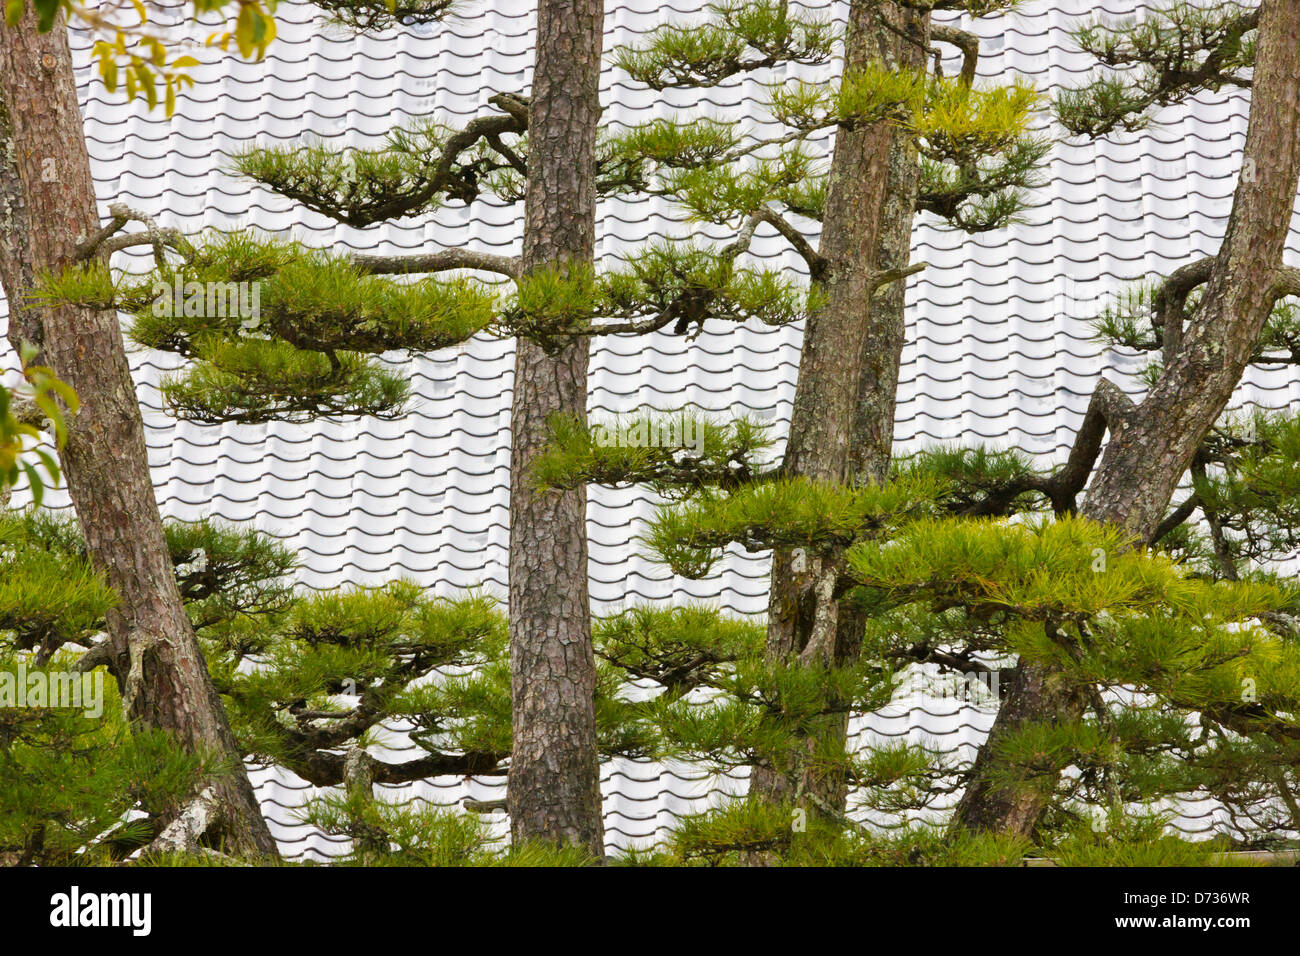 Pino con tetto di tegole, Miyajima, Giappone Foto Stock